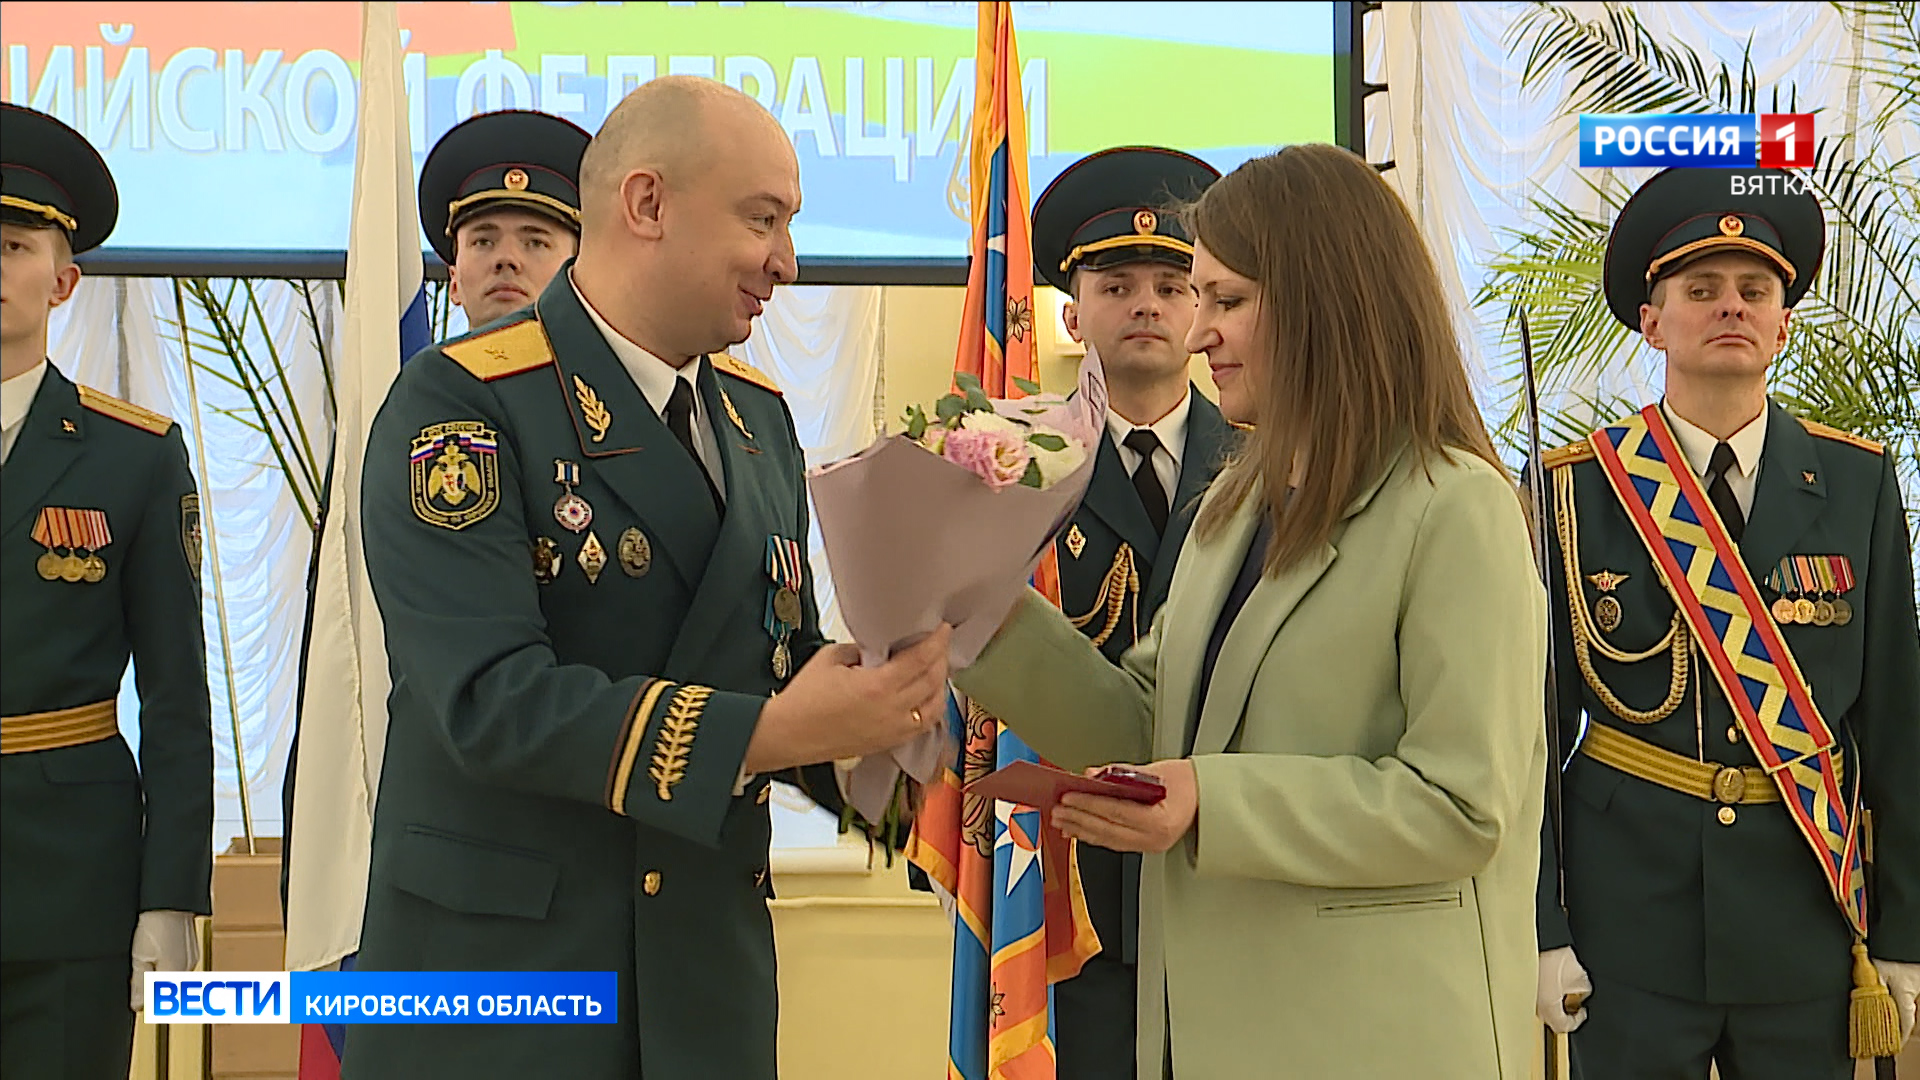 В Кирове состоялась торжественная церемония награждения, посвященная Дню спасателя